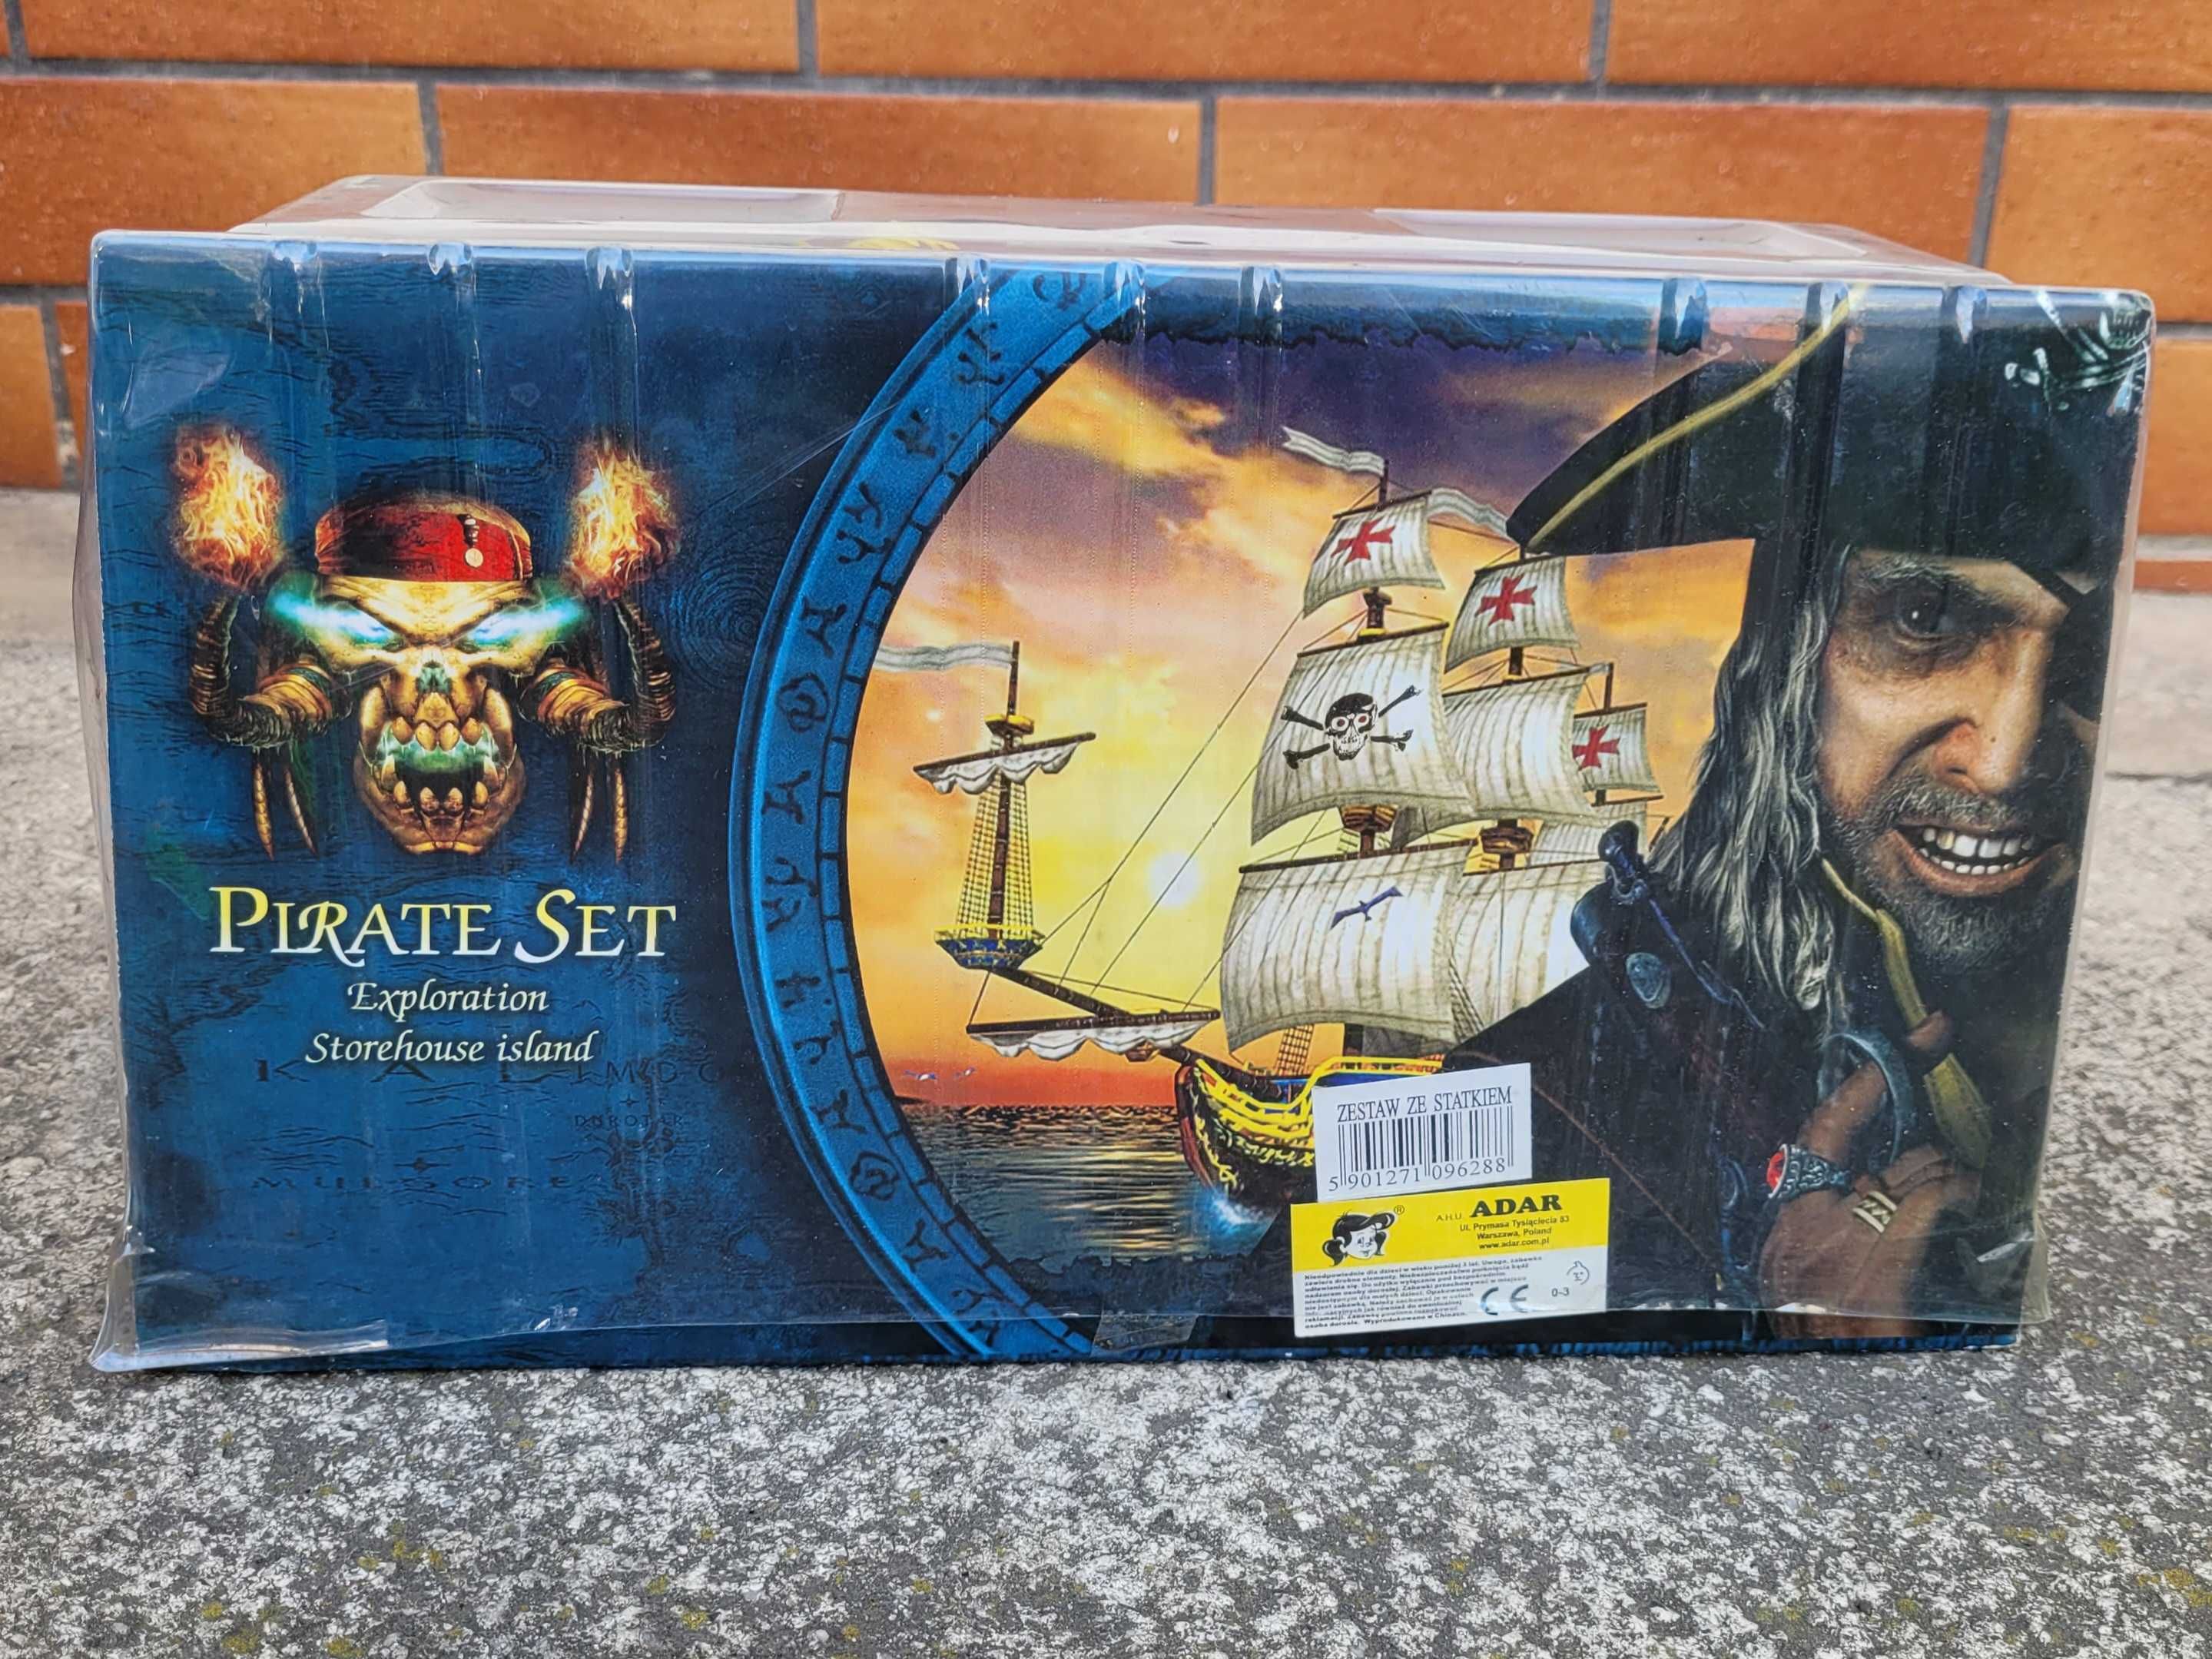 Zestaw Statek piracki i Pirat nowy Pirate Set Exploration z Karaibów